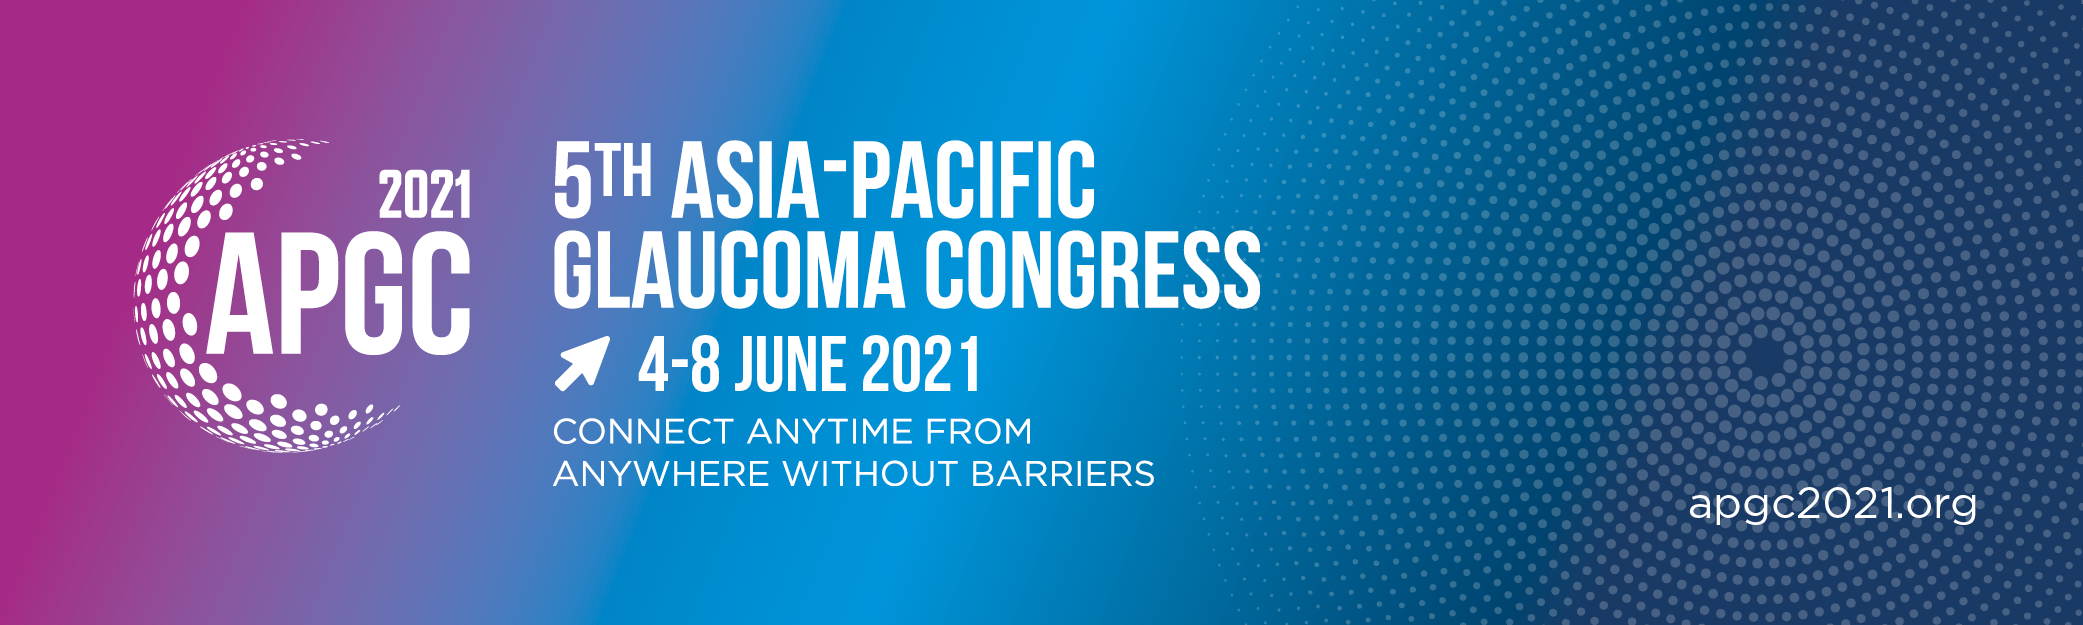 5th Asia-Pacific Glaucoma Congress